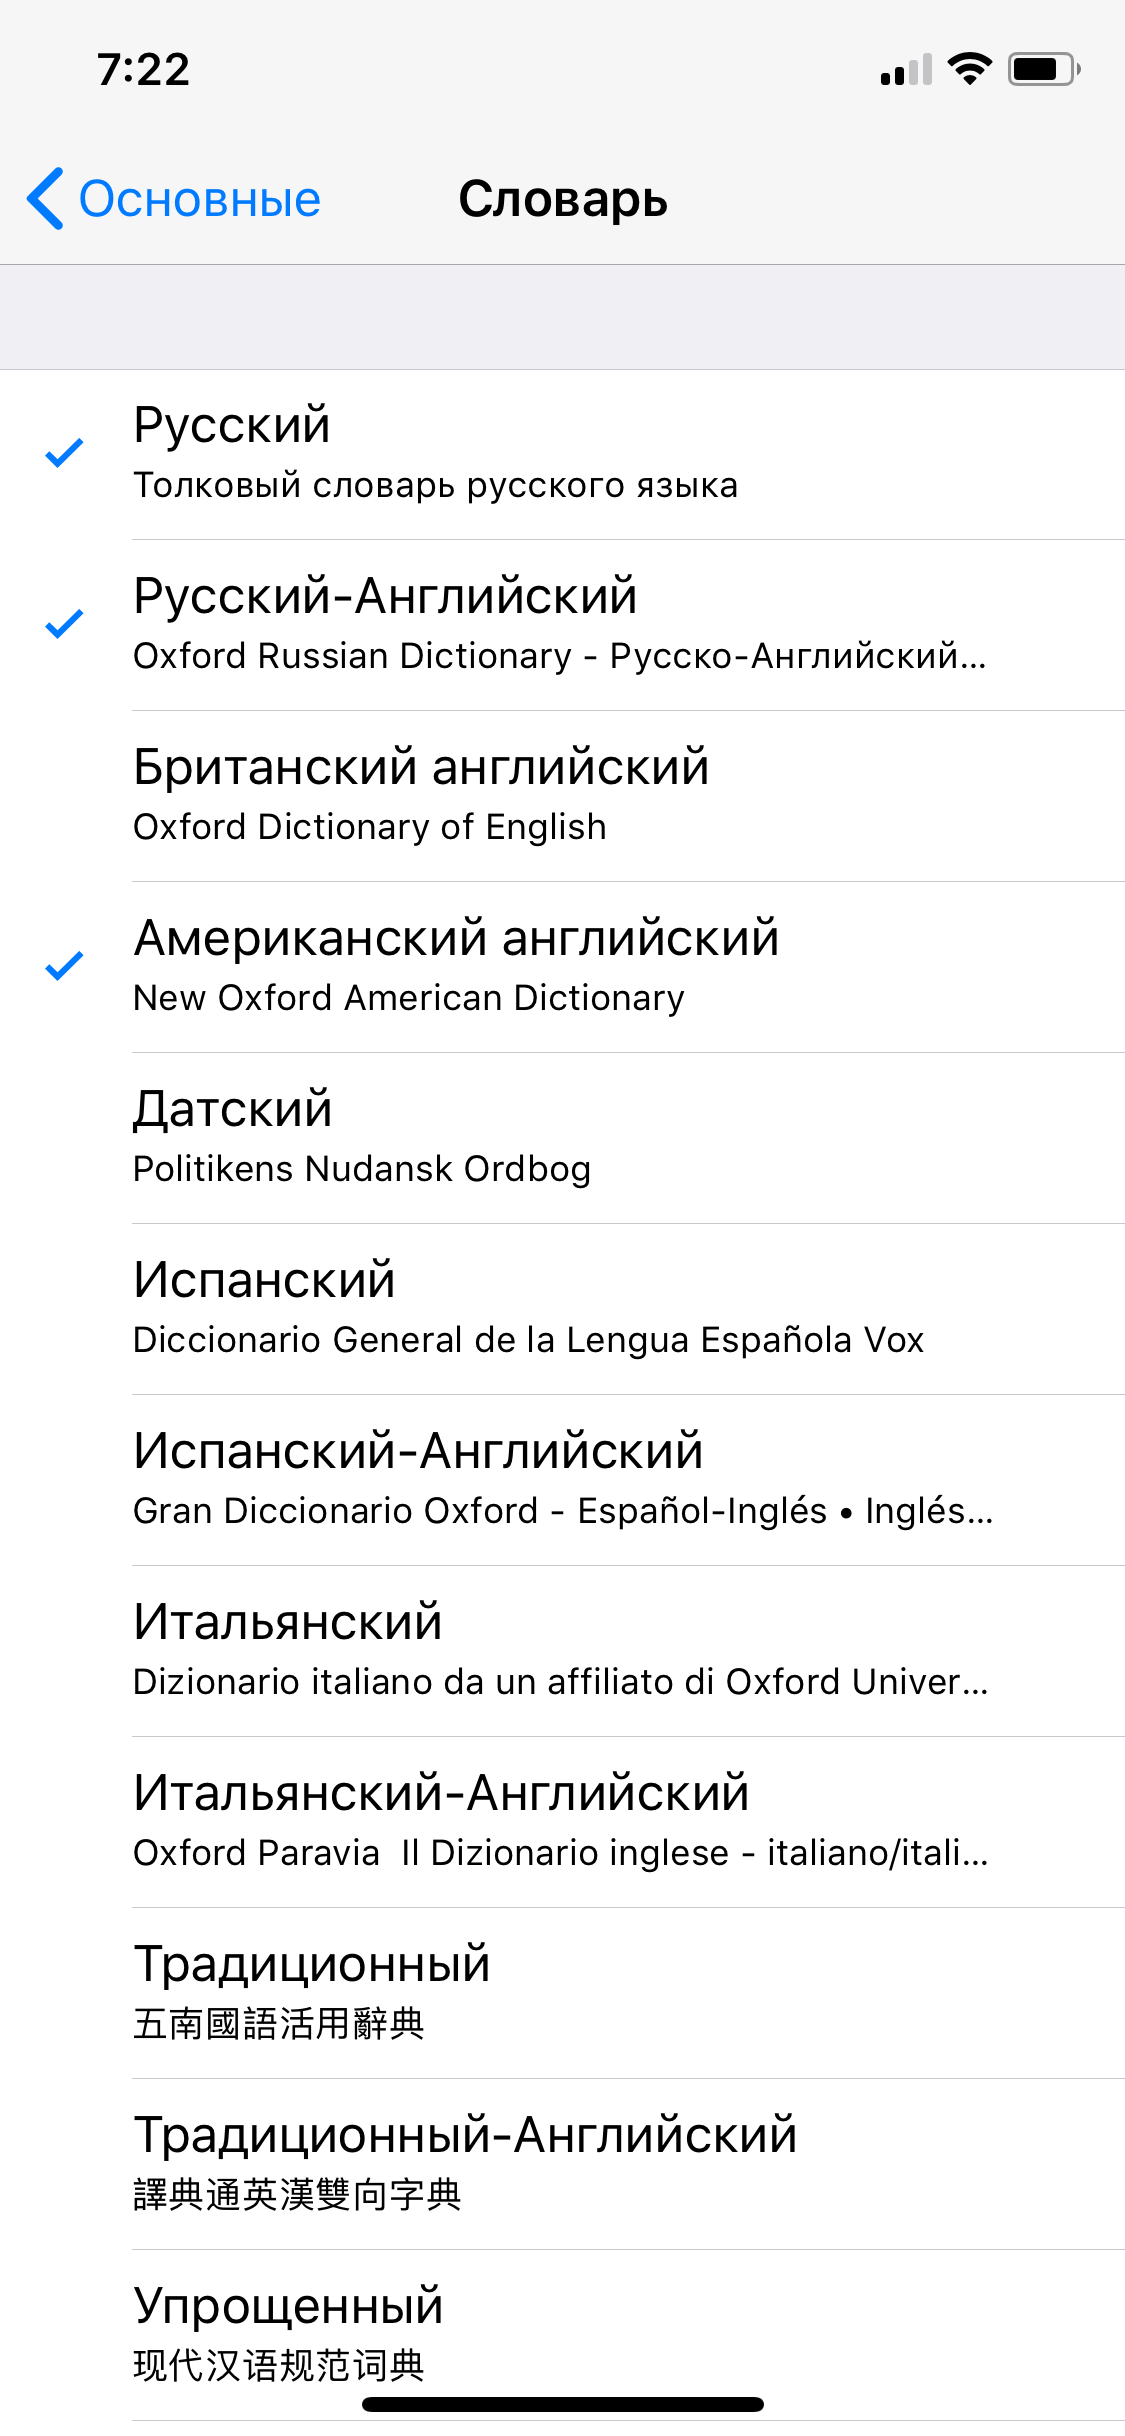 Как использовать встроенный словарь в iOS. Как выбрать словарь по умолчанию? Фото.